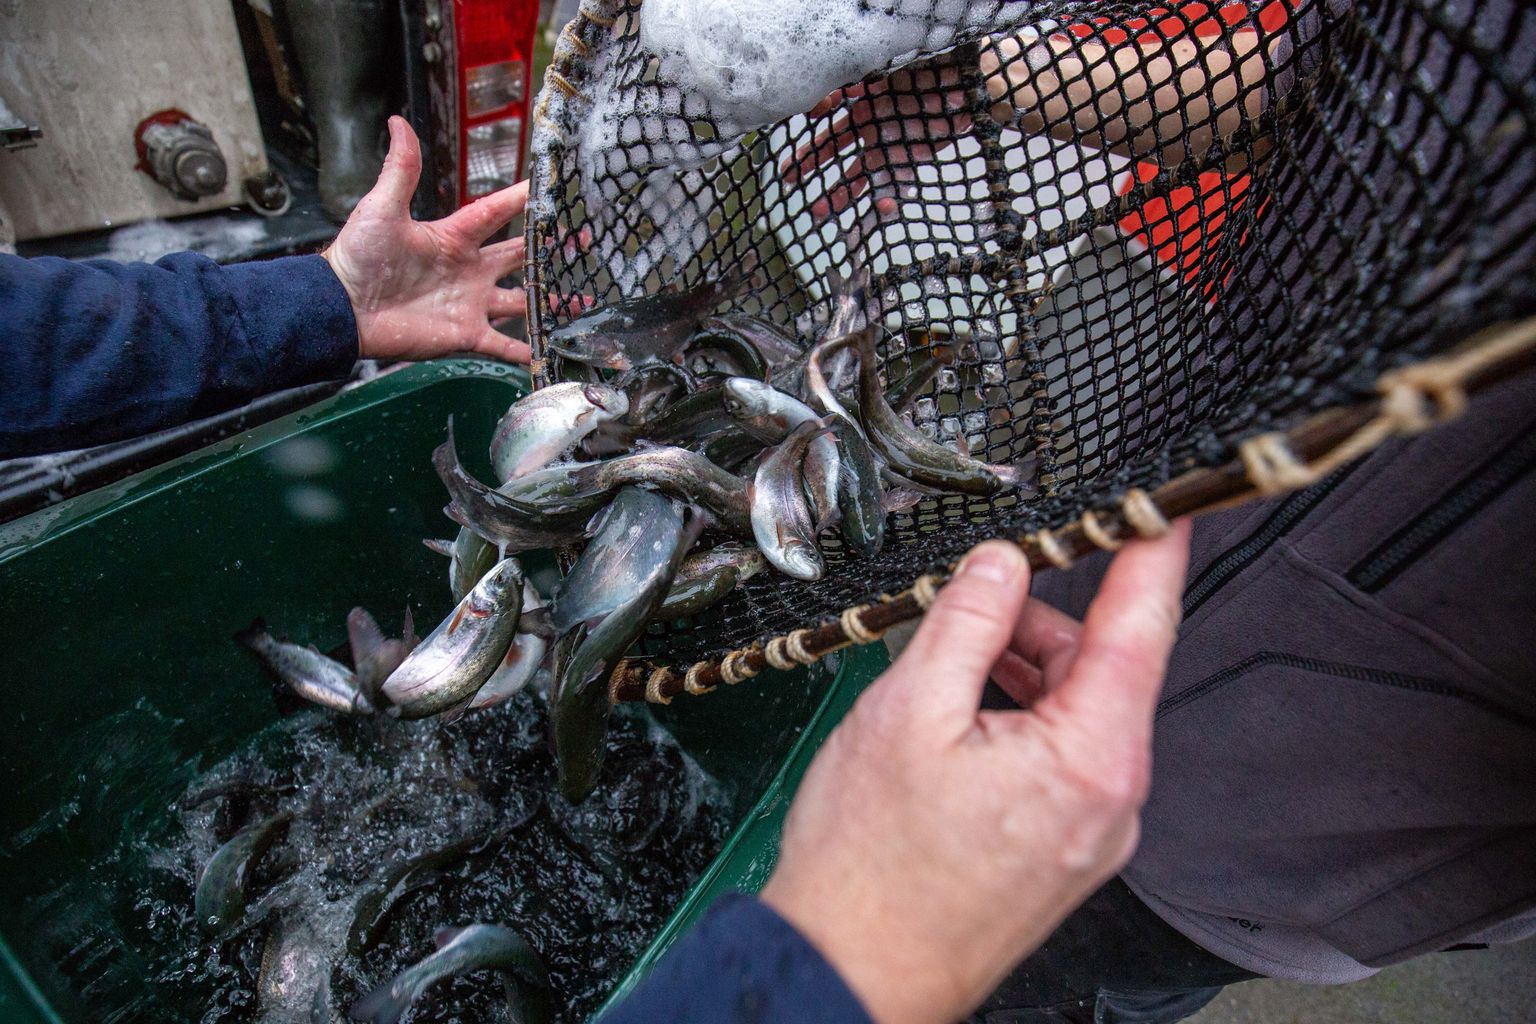 Kalakasvandused peavad nüüd forellimaime ostes olema eriti ettevaatlikud ja veenduma nende päritolus.